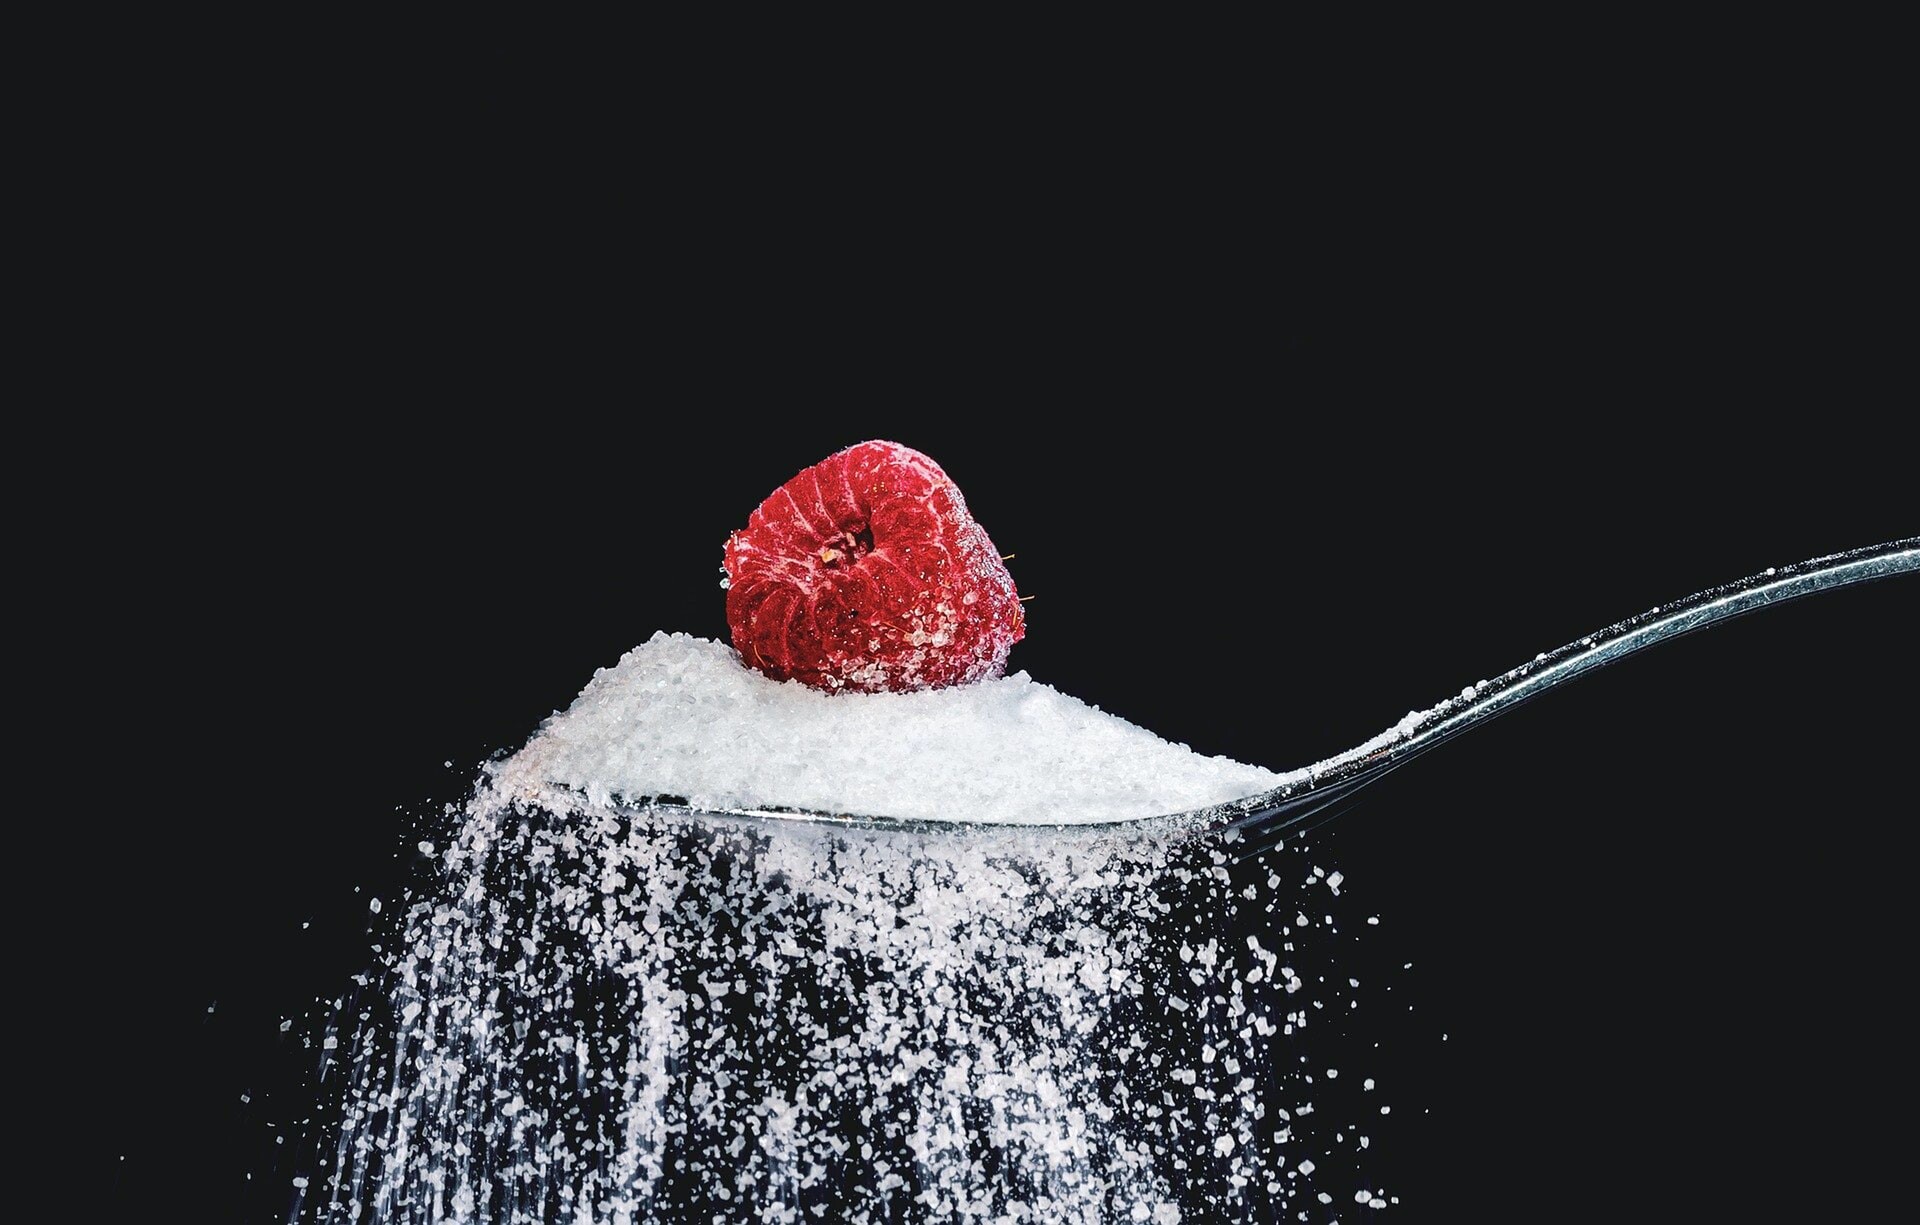 Sladký zabiják. Cukr hraje roli při vzniku obezity, cukrovky i Alzheimerovy choroby